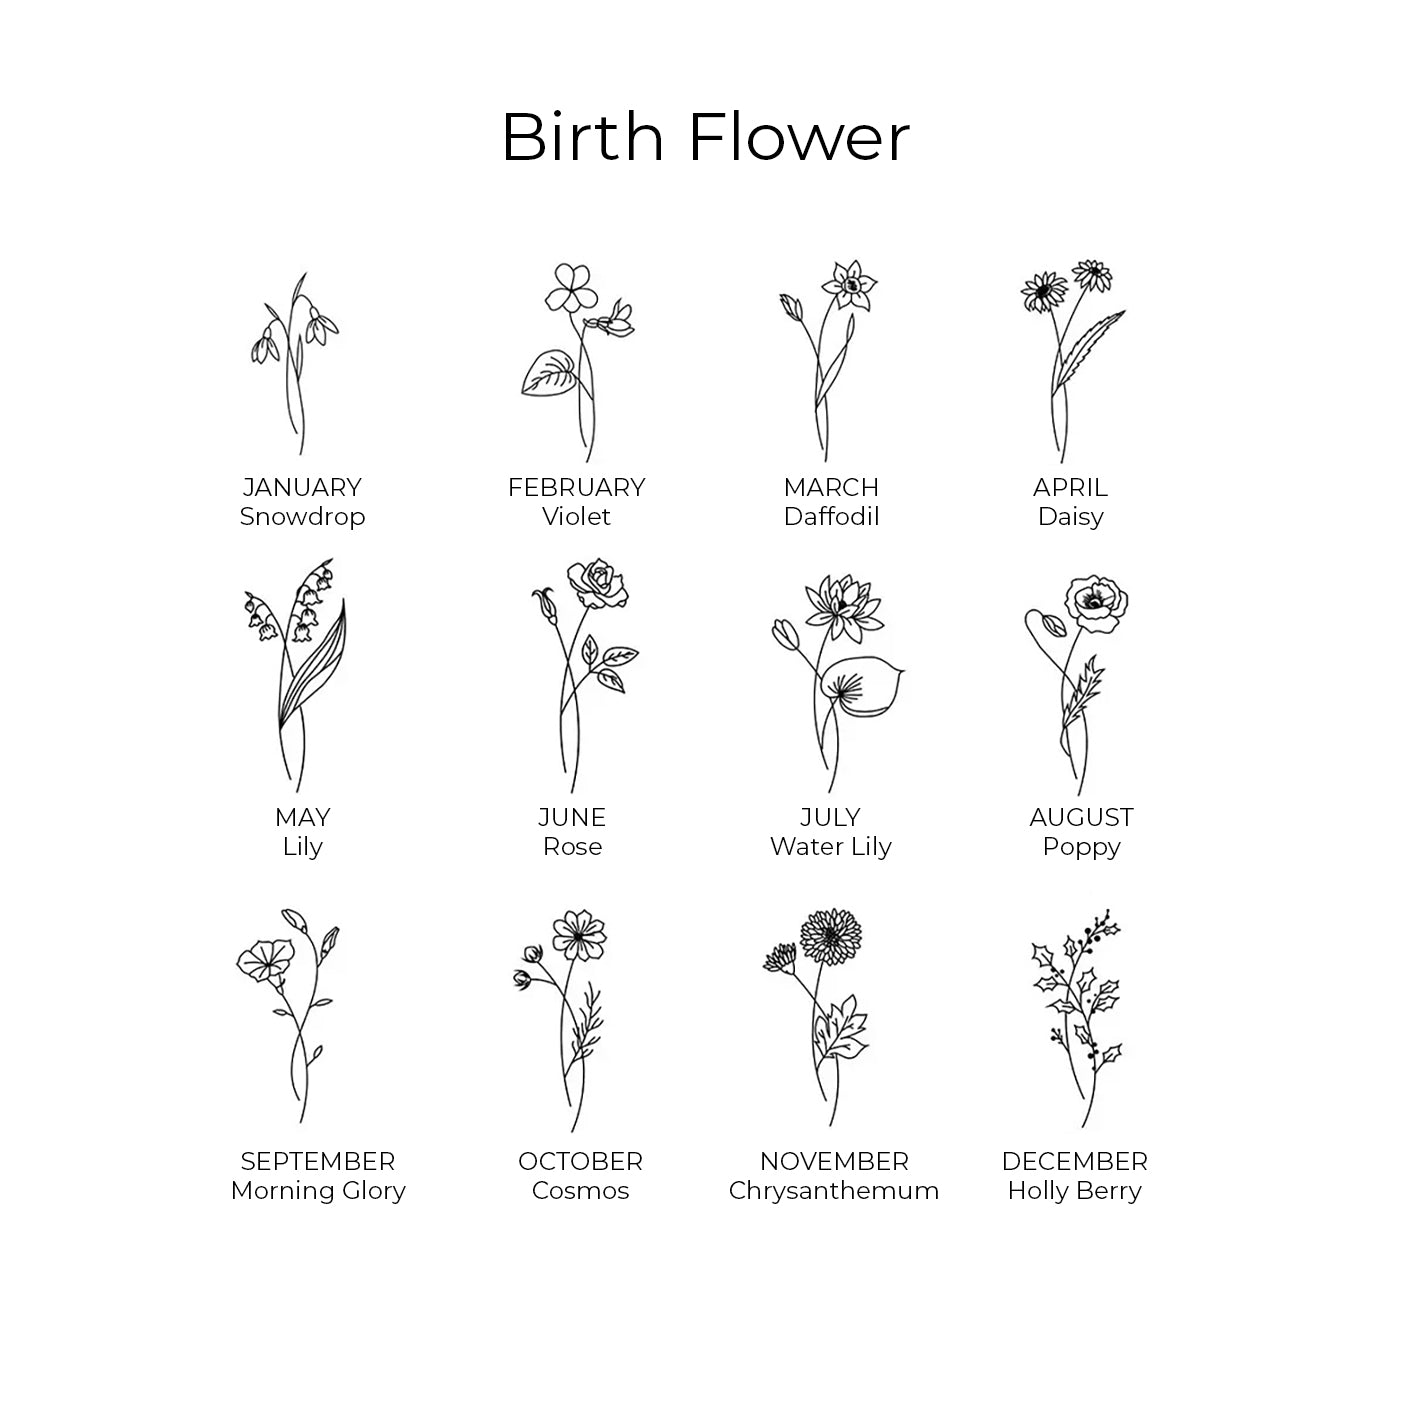 Birthstone Birth Flower Keychain